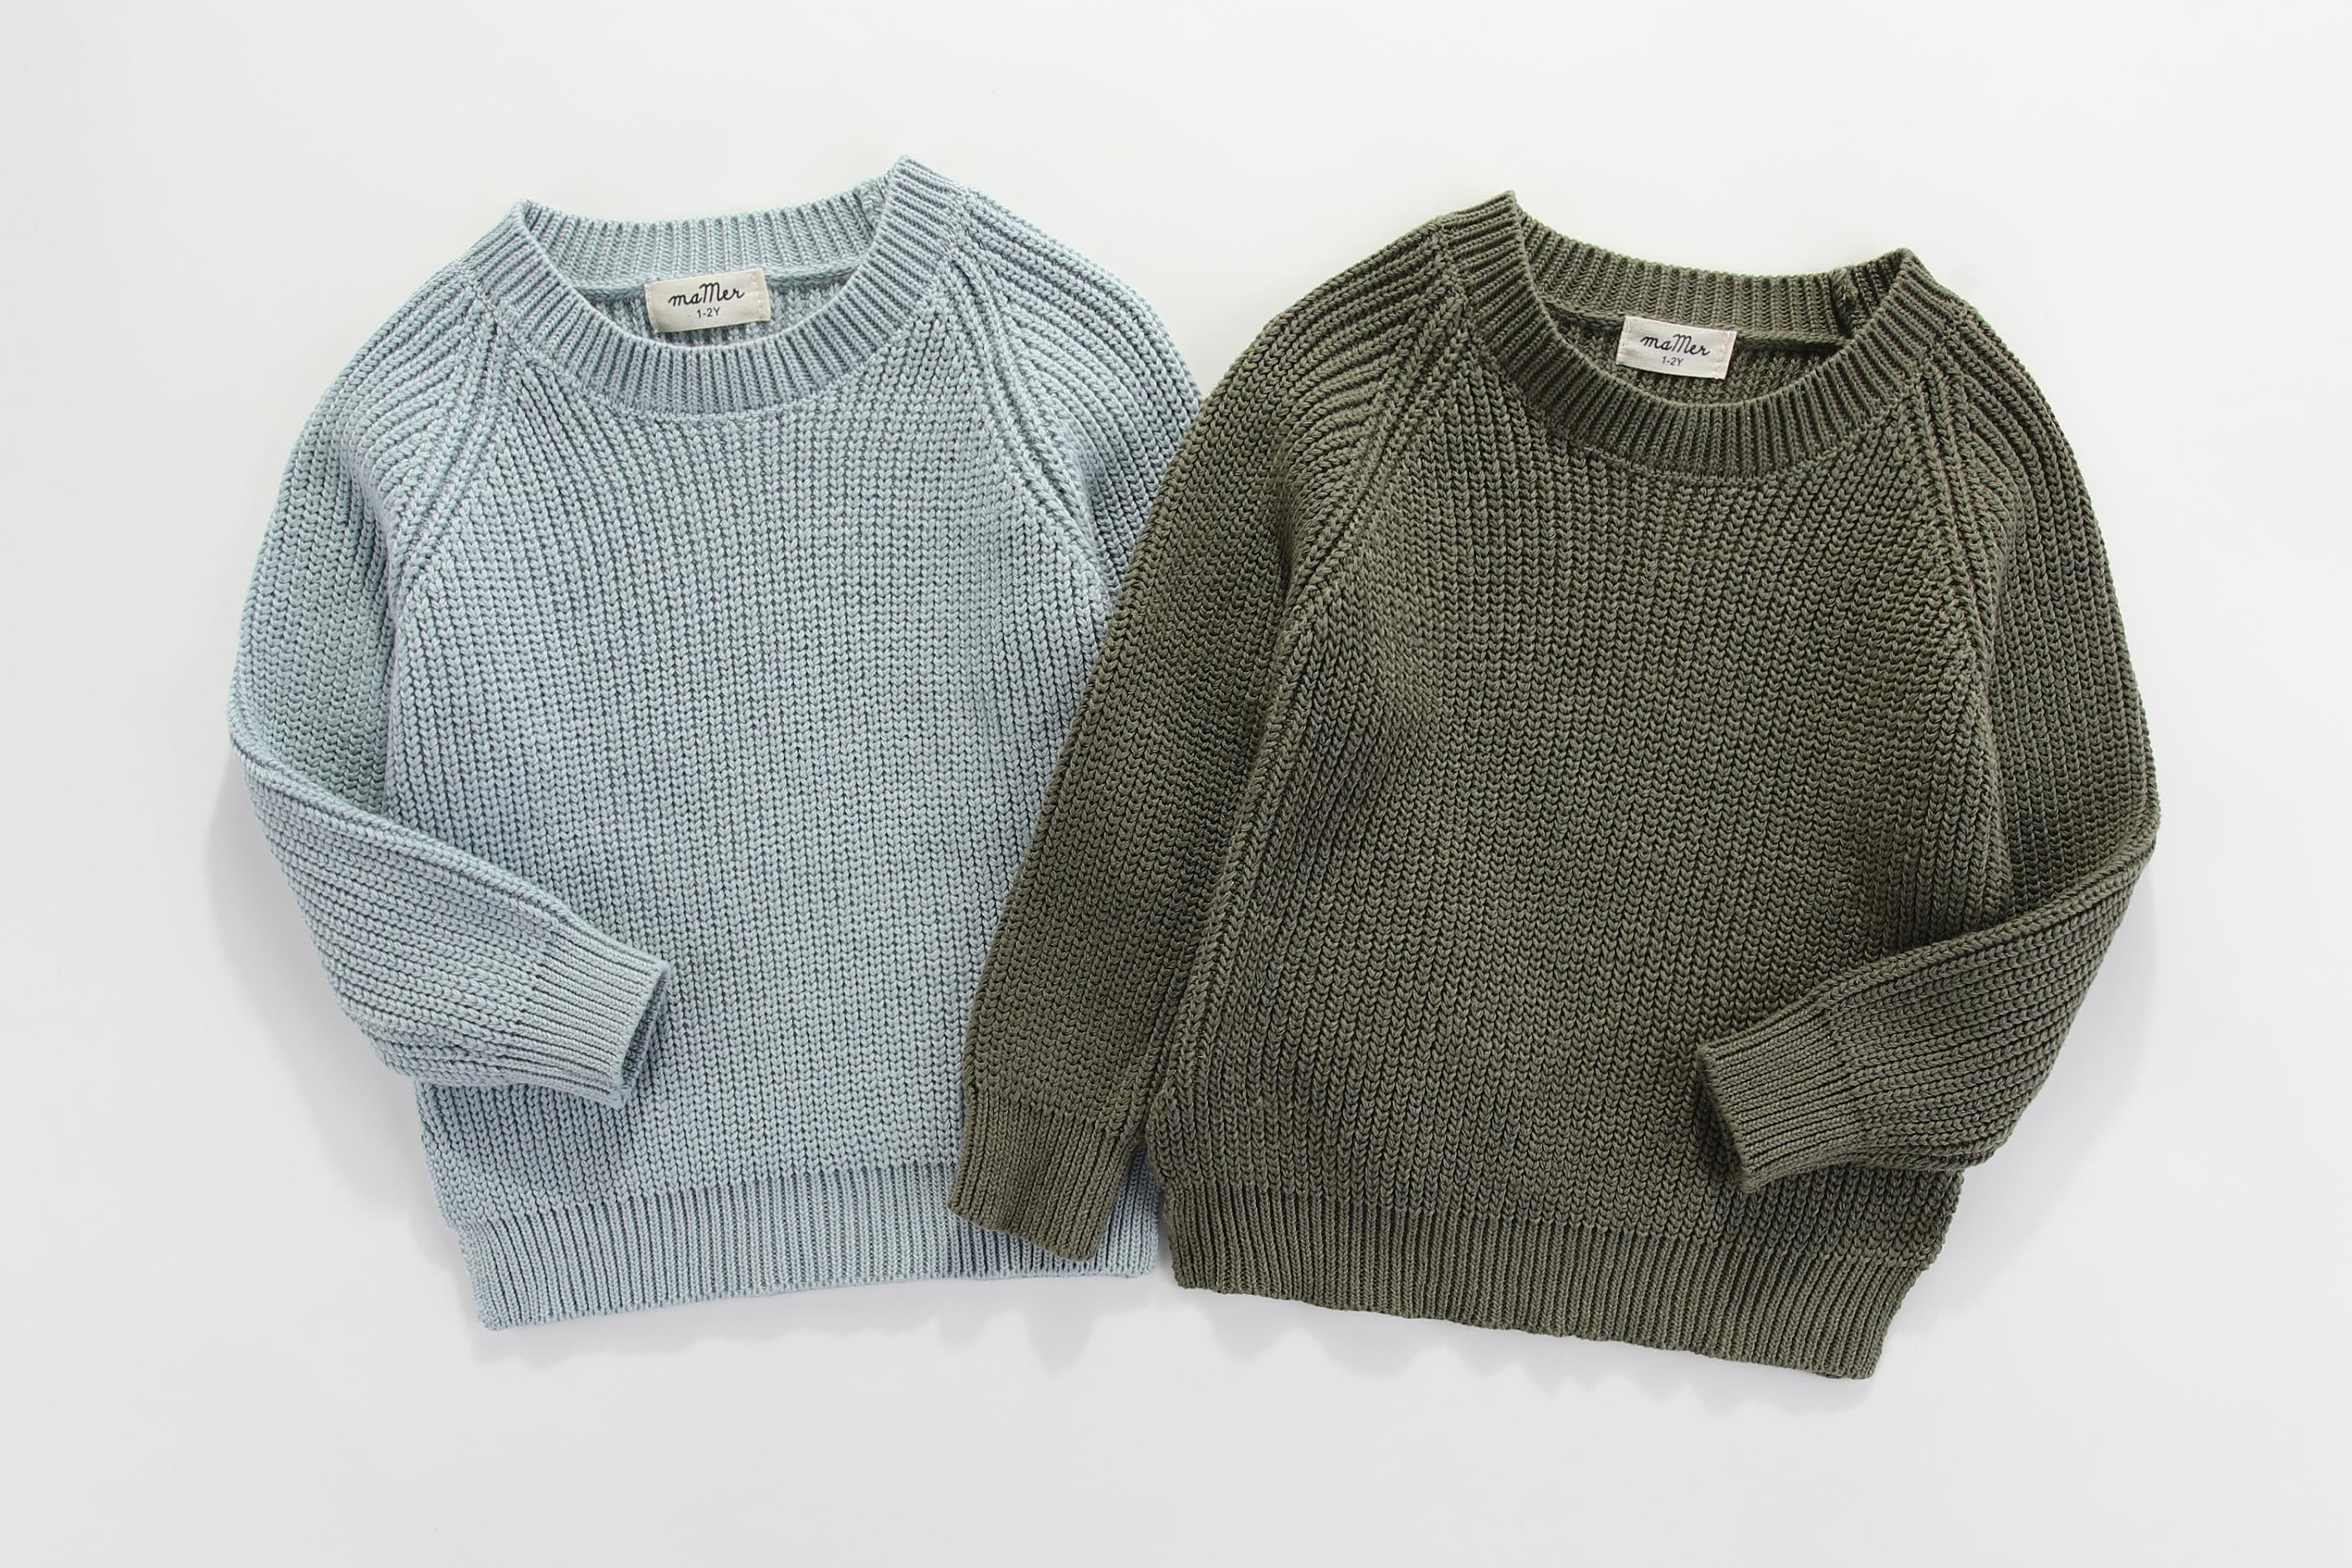 Frankie knitted jumper : 0-6M, 6-12M, 1-2Y, 2-3Y, 3-4Y, 4-5Y, 5-6Y, 6-7Y, 7-8Y